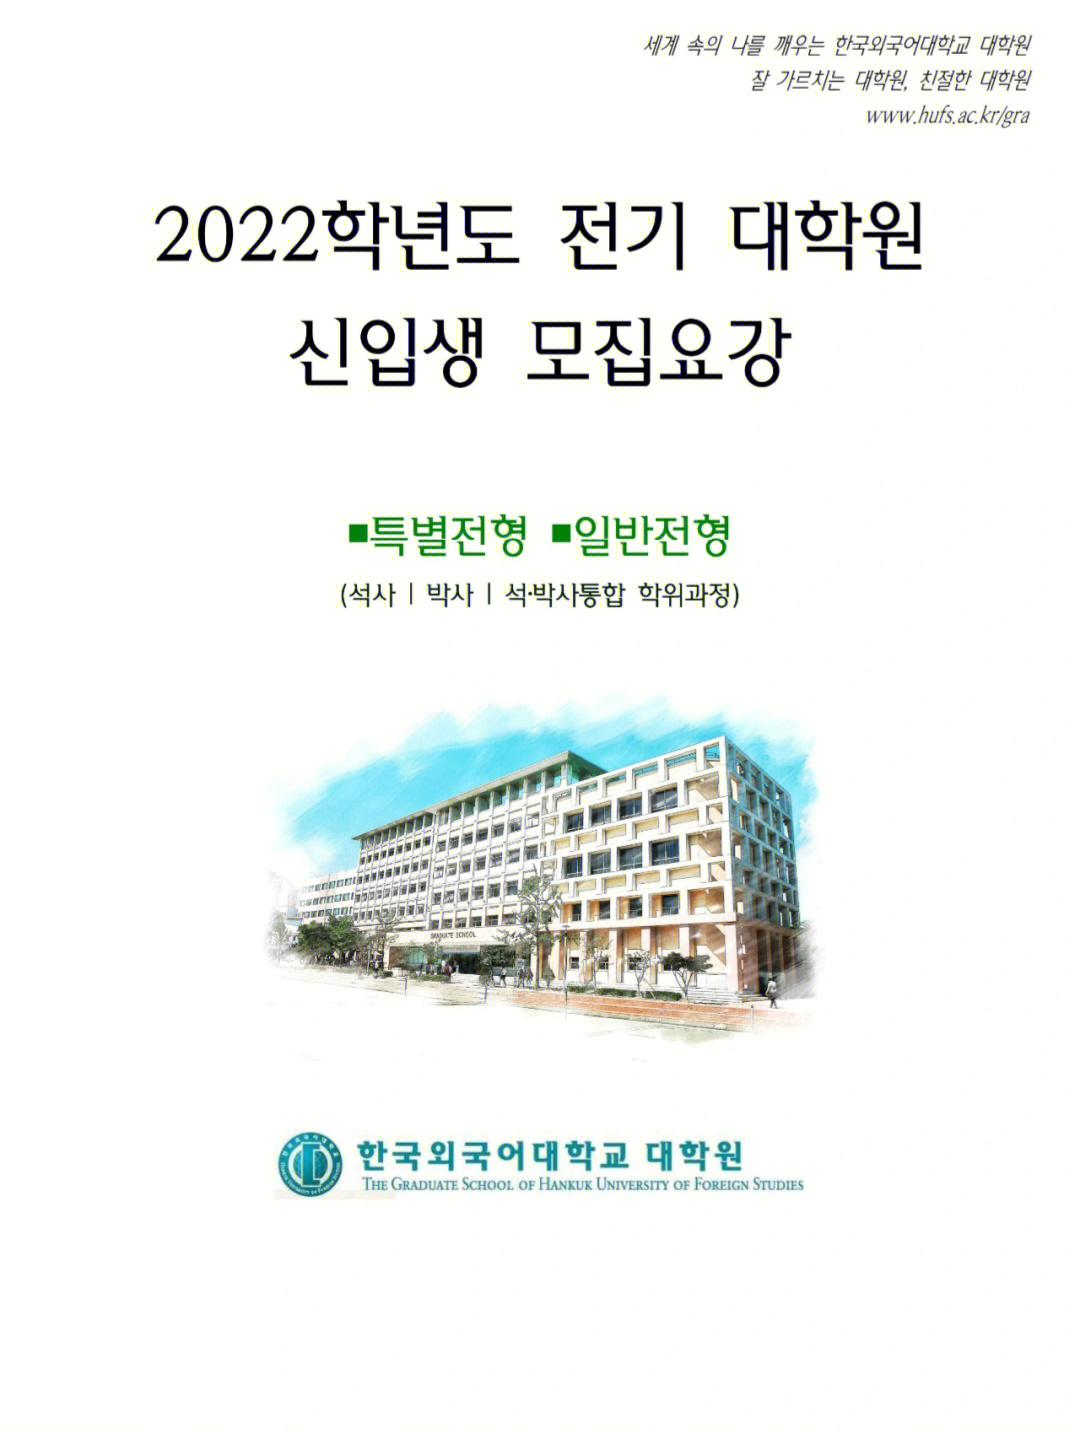 韩国外国语大学大学院223招生简章